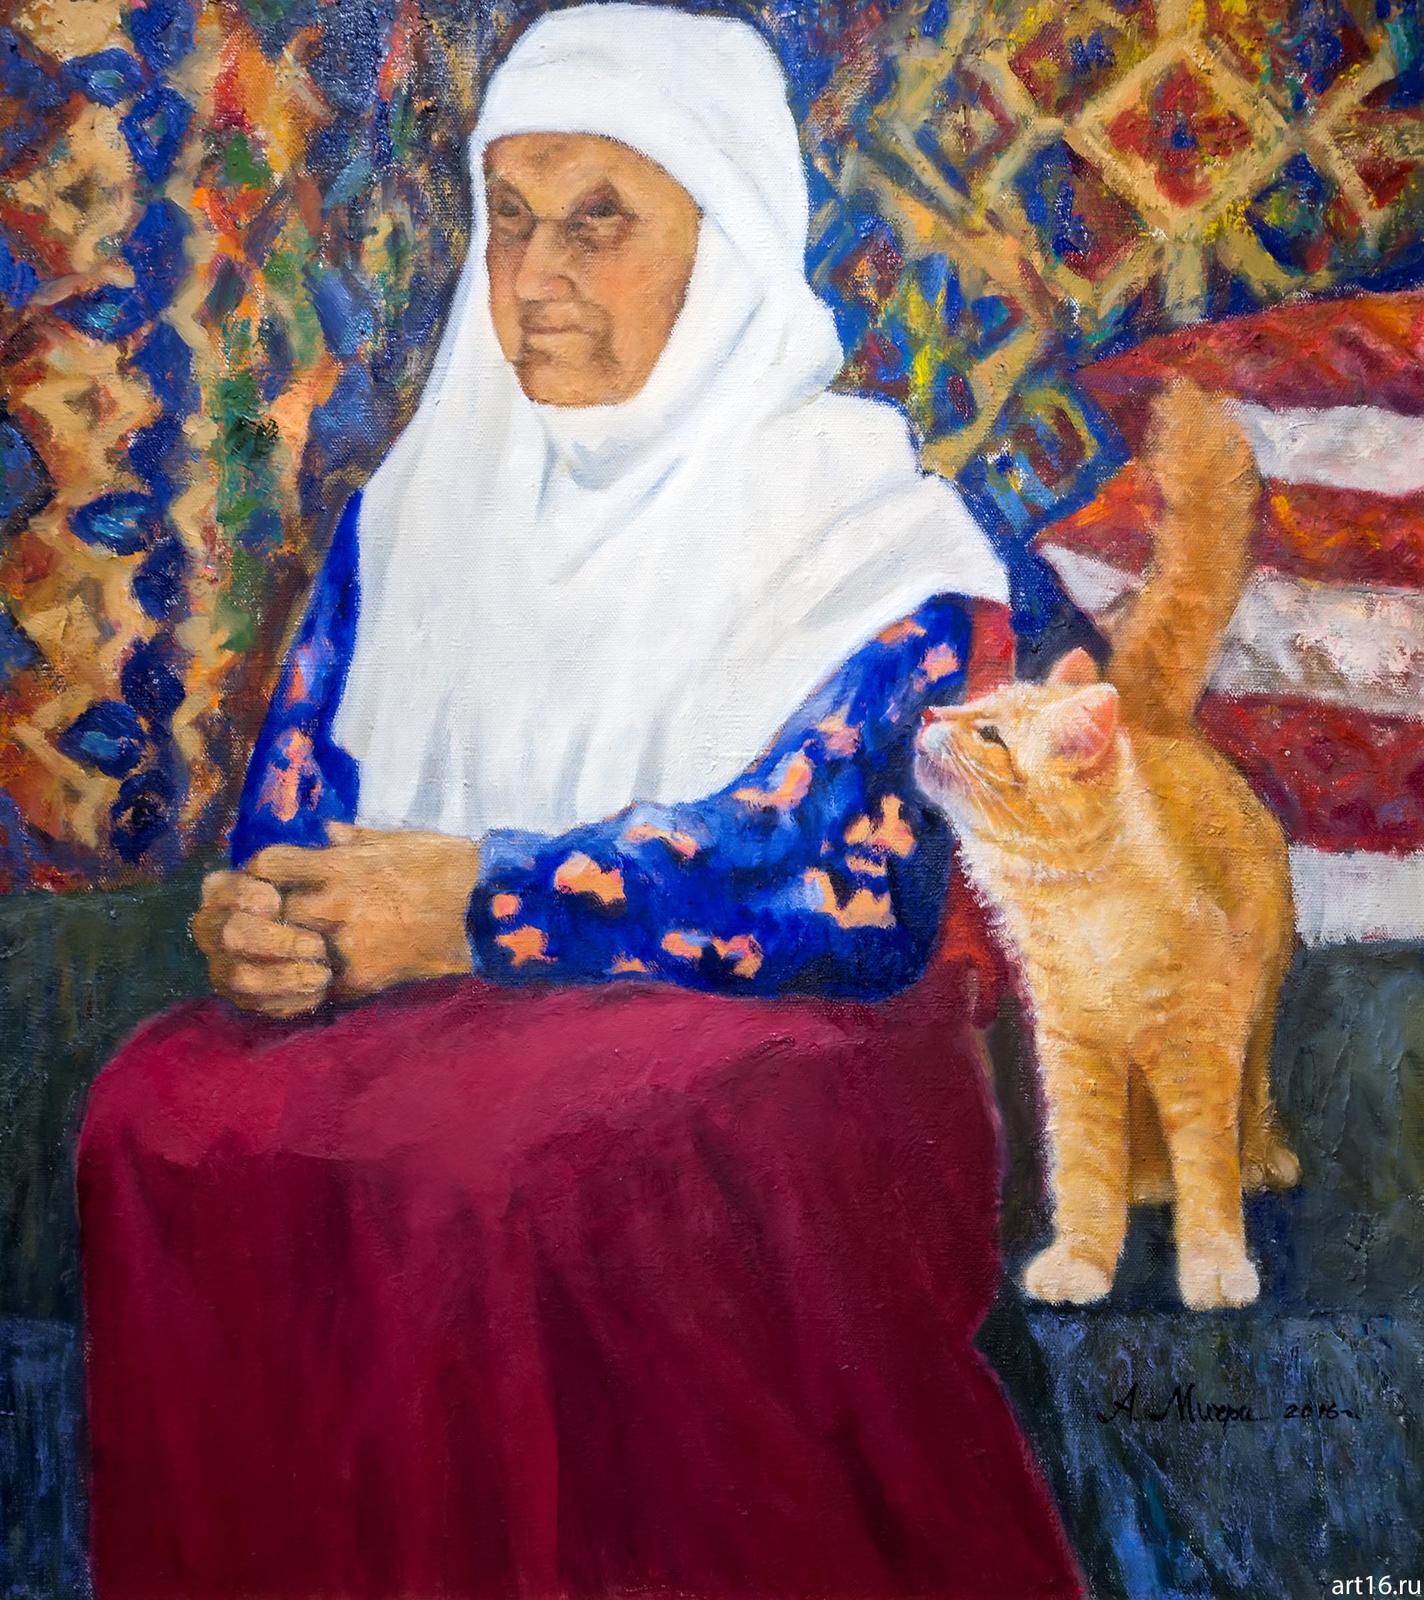 Фото №892950. Бабушка с кошкой. 2016. Мичри А.И. 1934 